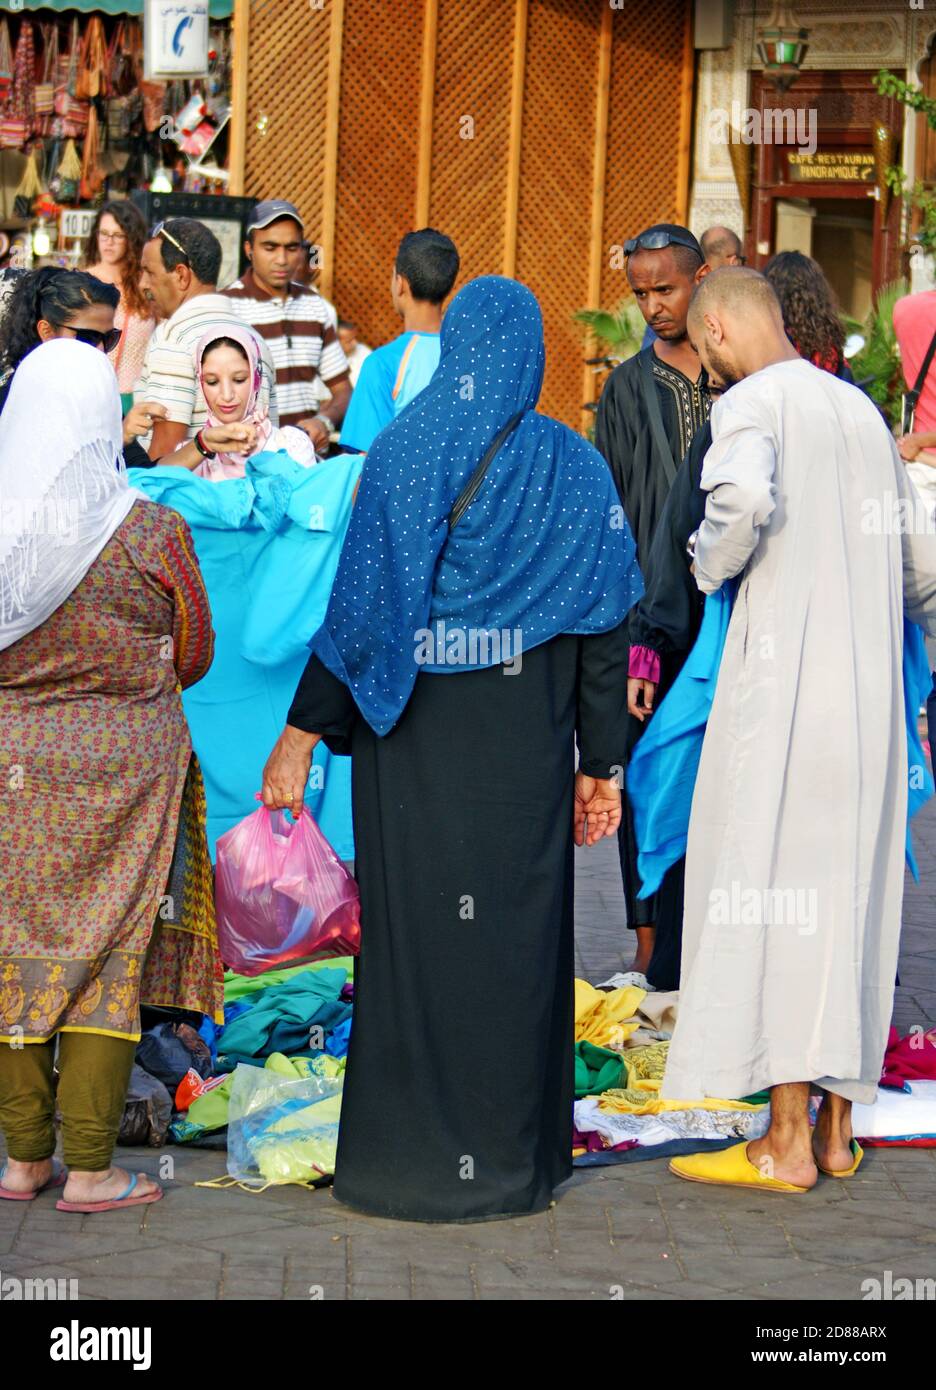 Händler und Kunden handeln auf der Straße in der Altstadt von Fez, Marokko, um Kleidung. Stockfoto